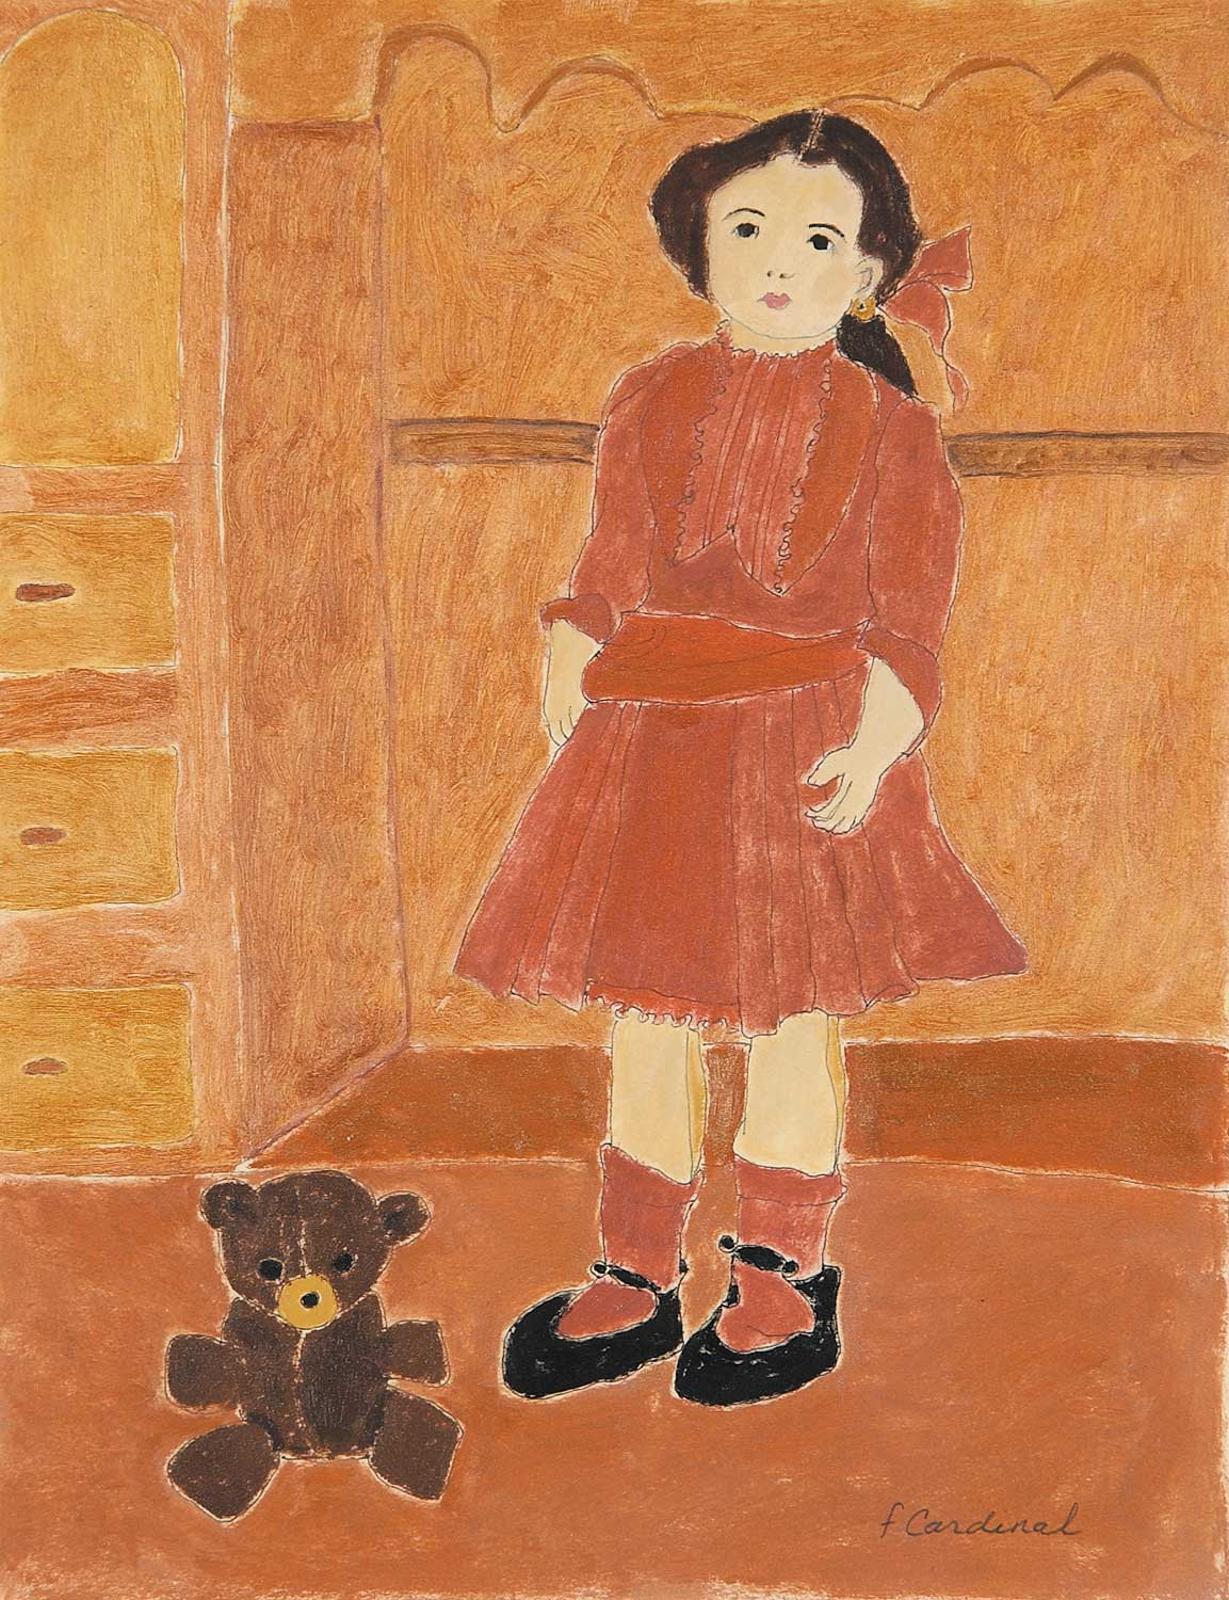 Francoise Cardinal - Doll and Teddy Bear